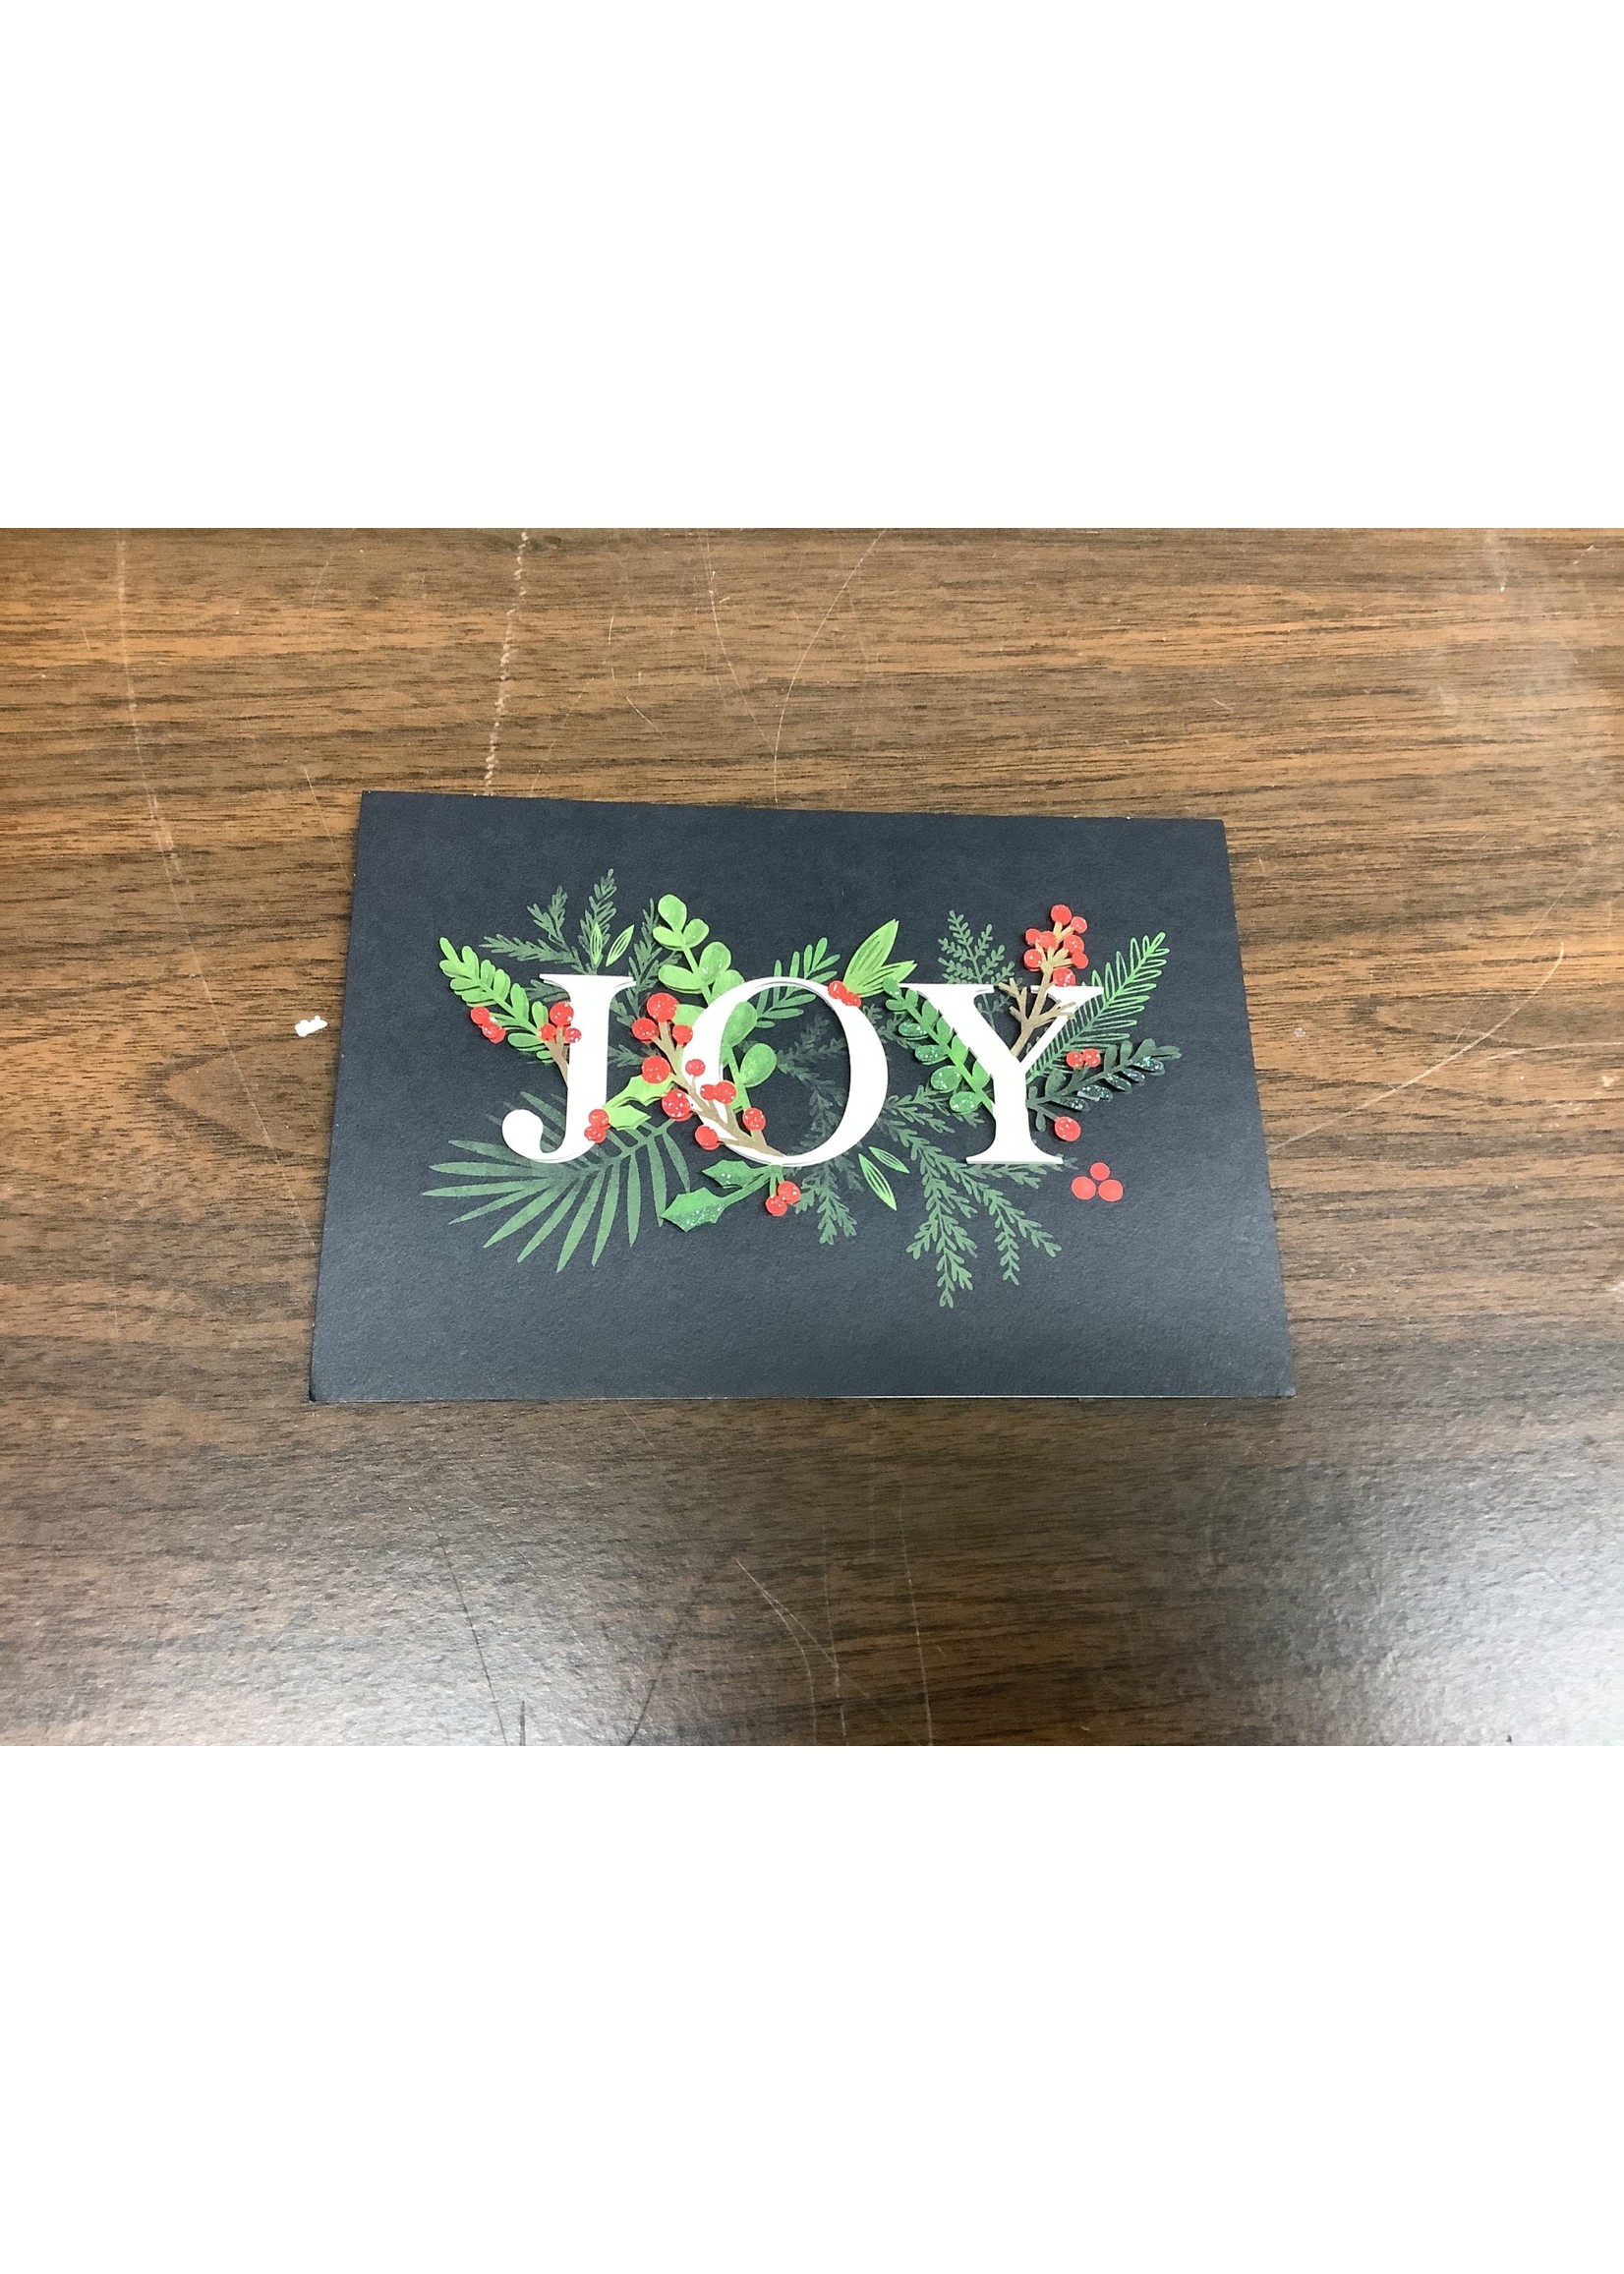 Hallmark “Joy” Christmas Card Packaged